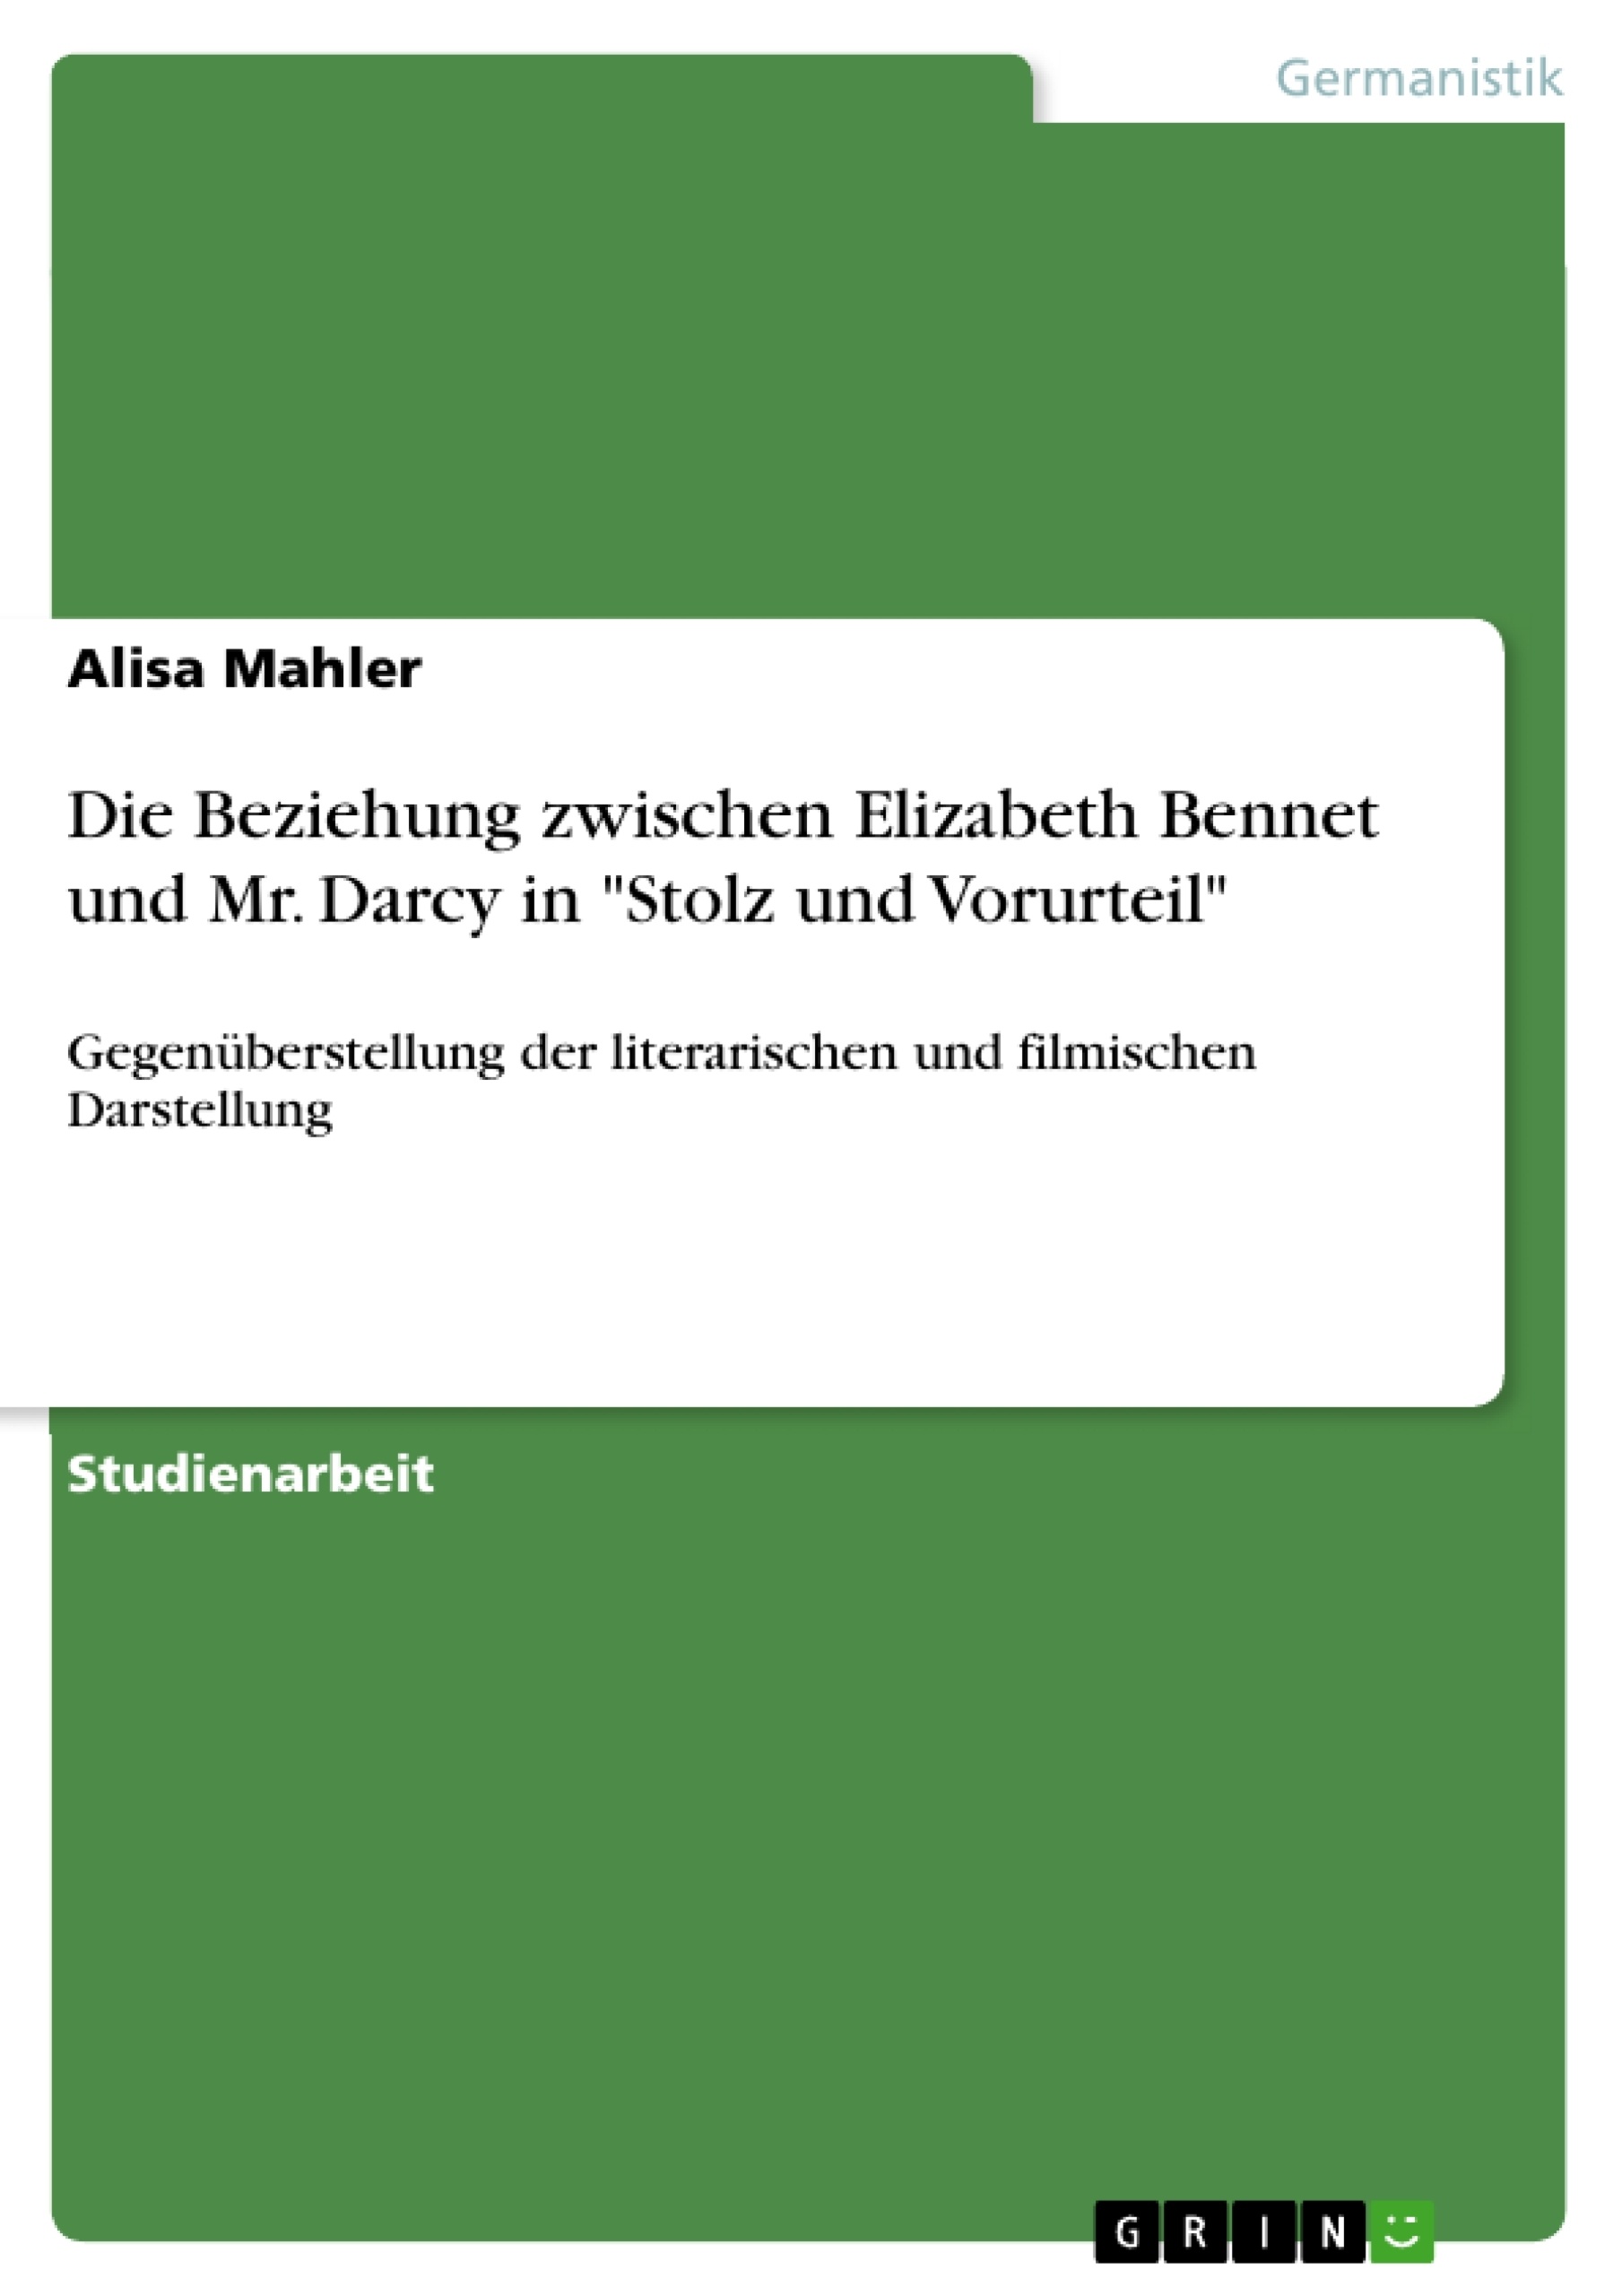 Titre: Die Beziehung zwischen Elizabeth Bennet und Mr. Darcy in "Stolz und Vorurteil"